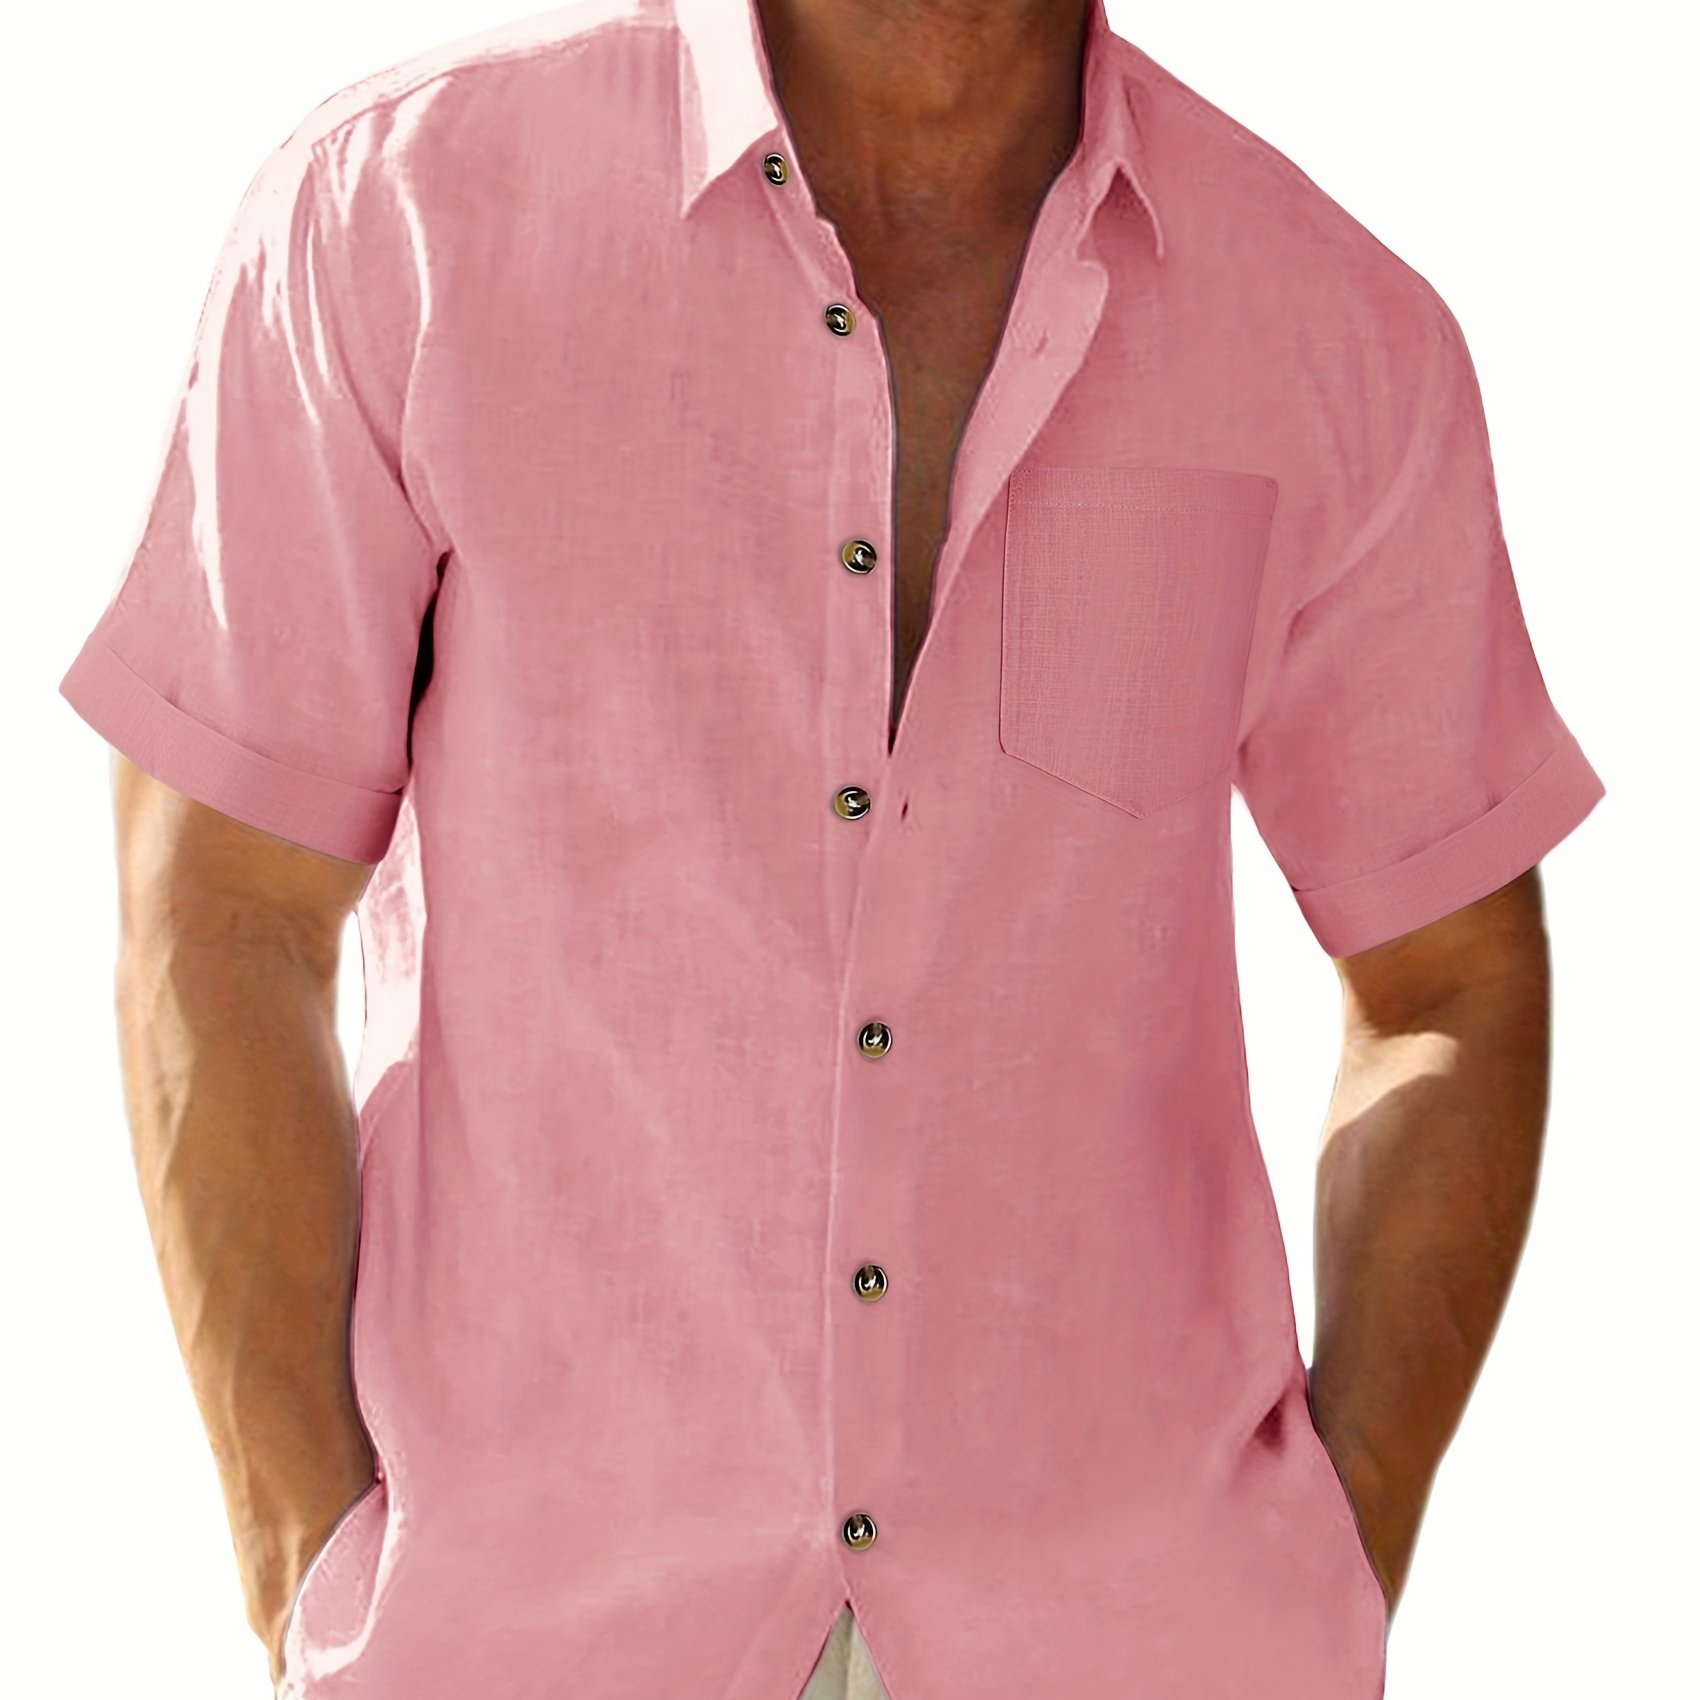 Men's t-shirt Decatur - SOFTNESS 15 Short sleeve Pink - E23